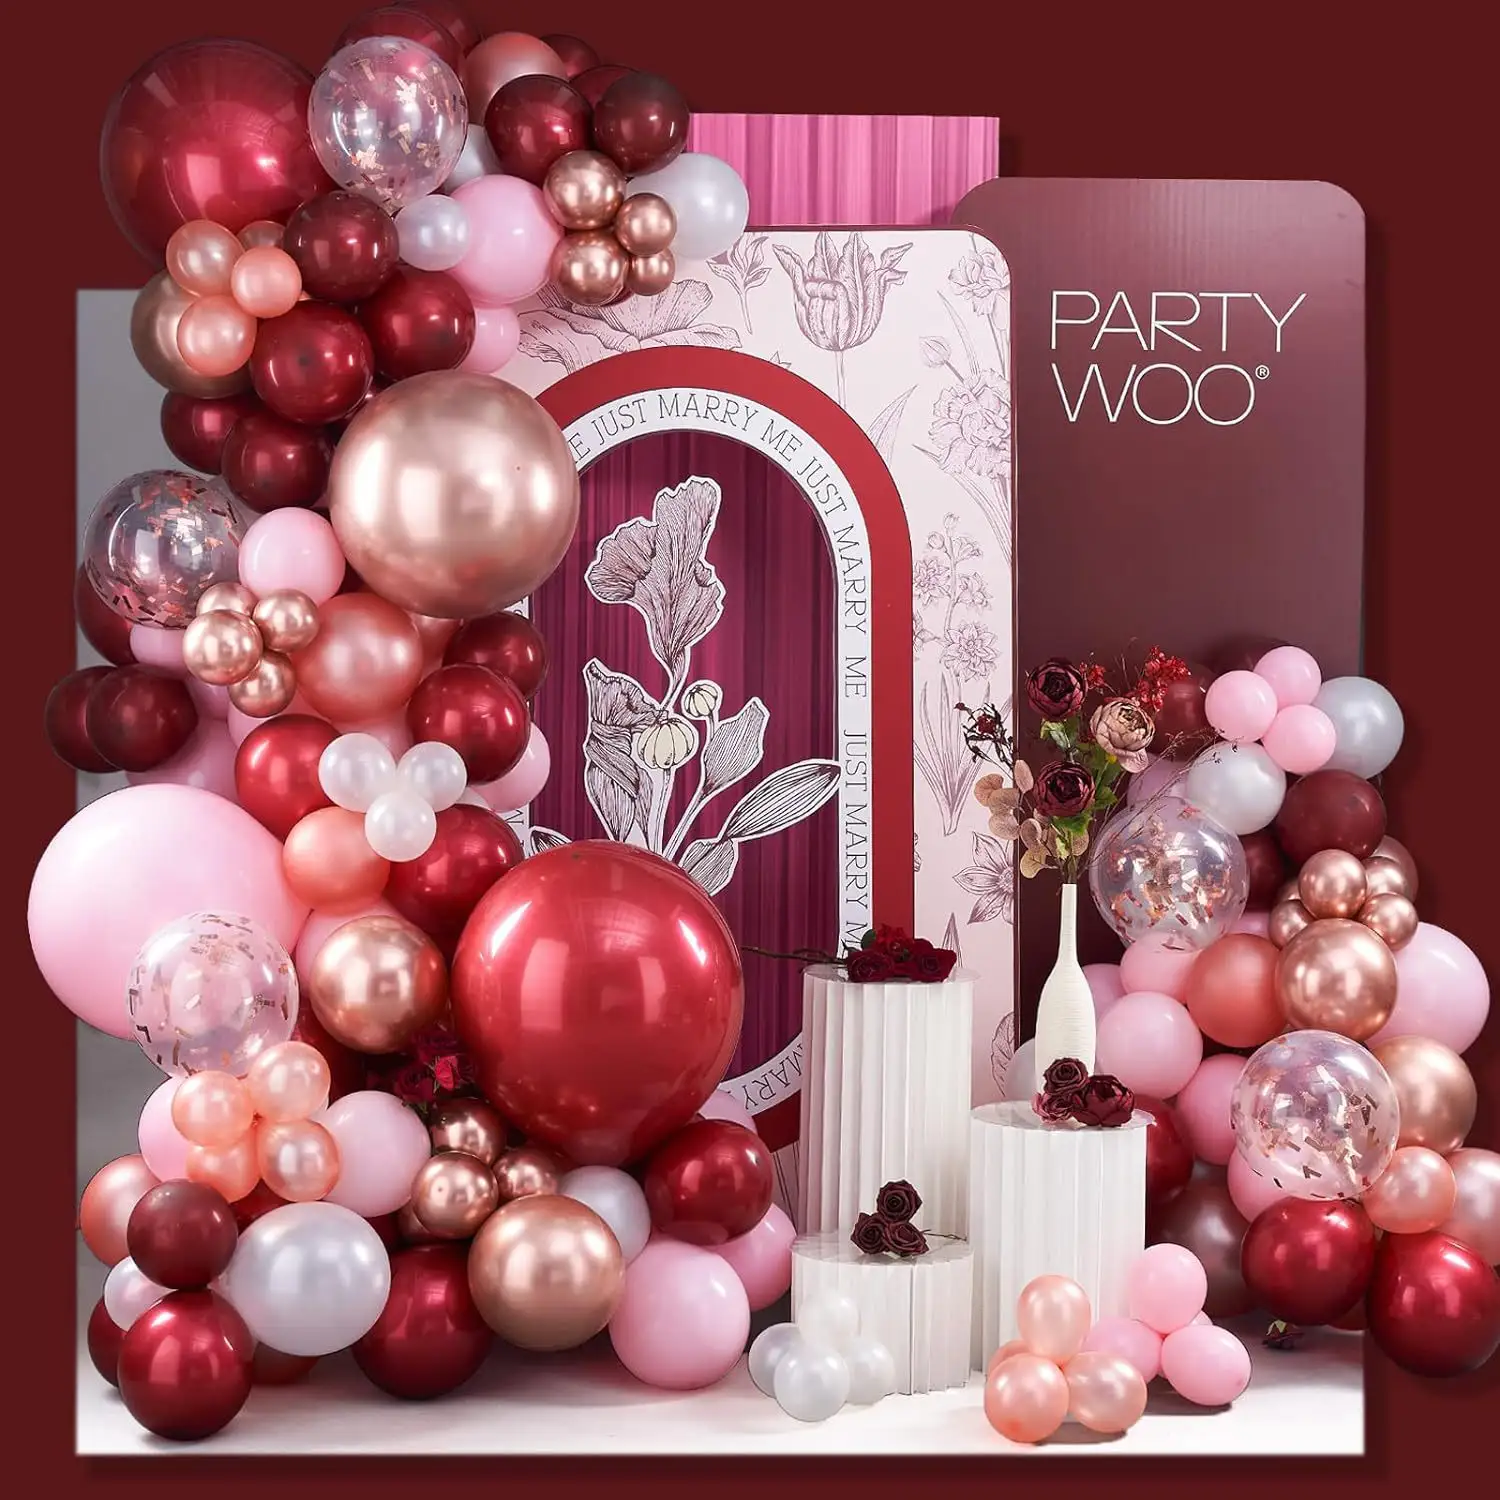 誕生日パーティーウェディングキッズベビーシャワーデコレーション140pcsワインレッドバルーンガーランドアーチキットピンクシリーズバルーン